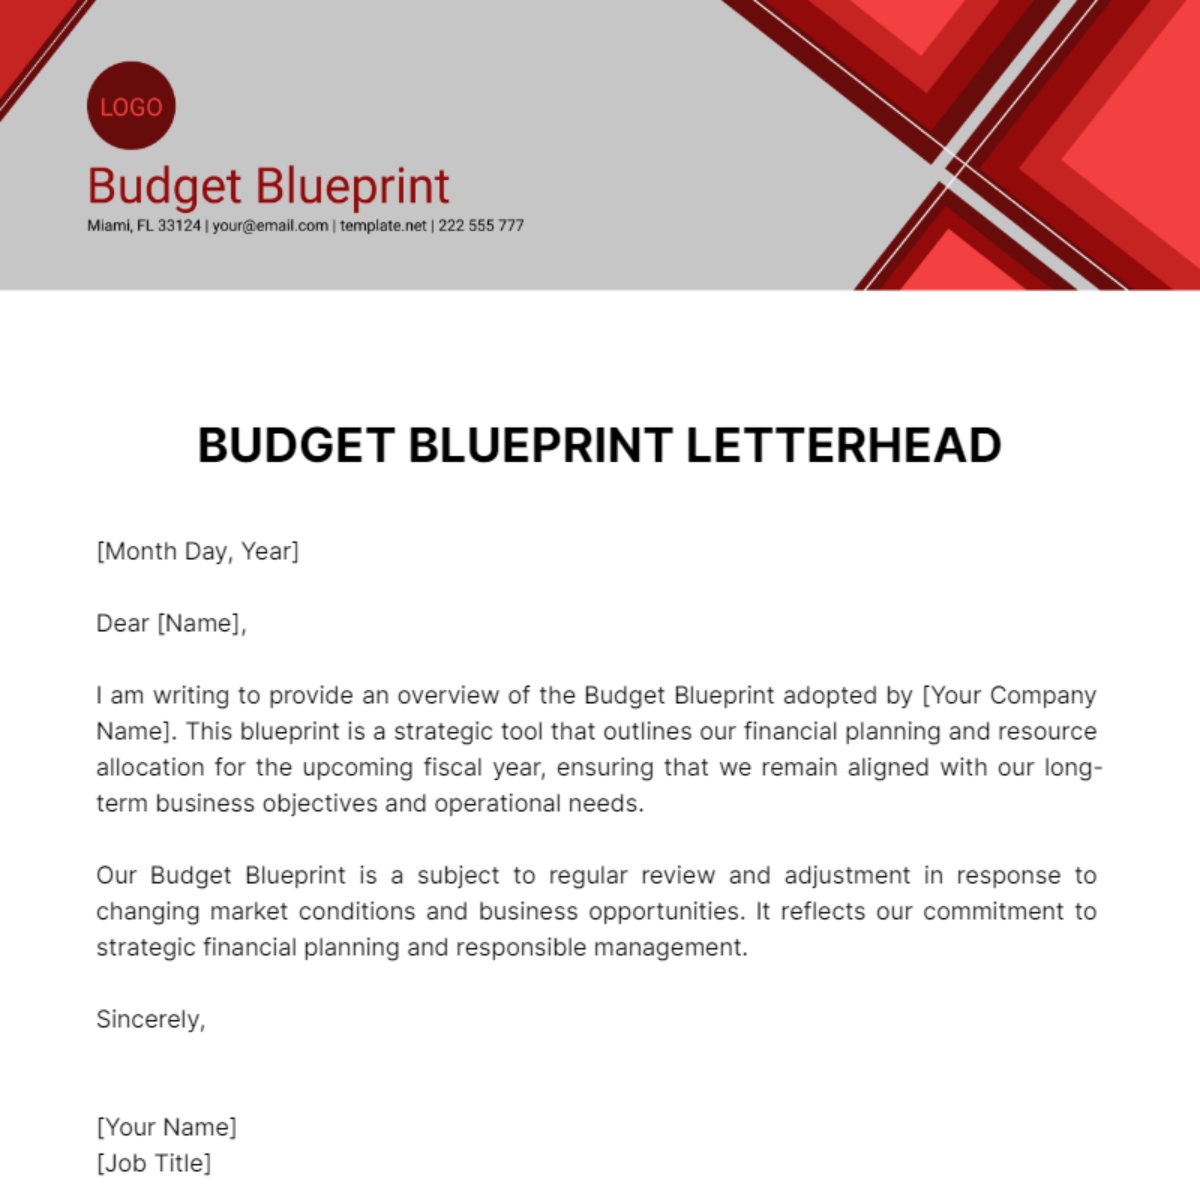 Budget Blueprint Letterhead Template